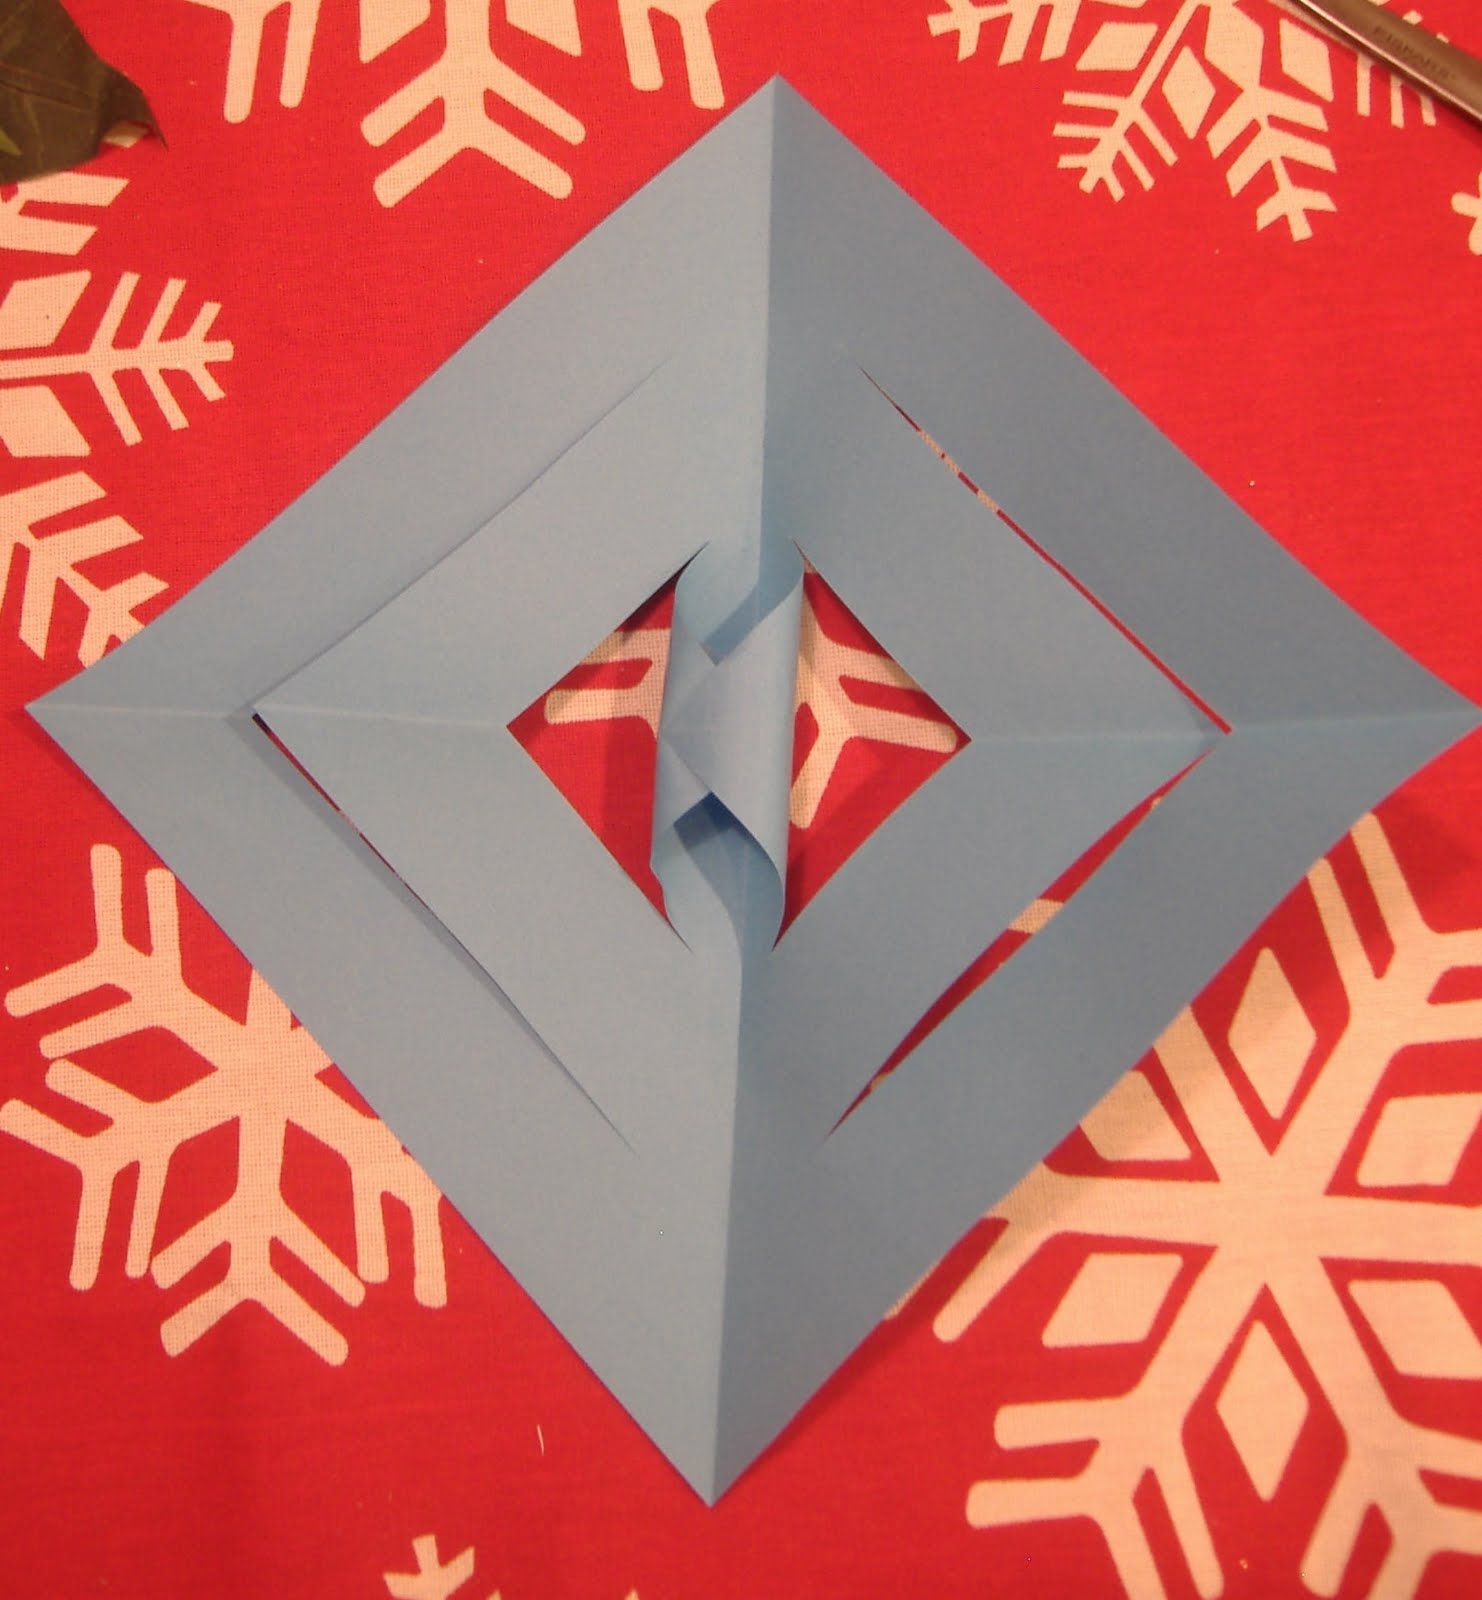 Как сделать из бумаги снежинку большую: Как сделать снежинку своими руками из бумаги, картона, бисера, клея и макарон